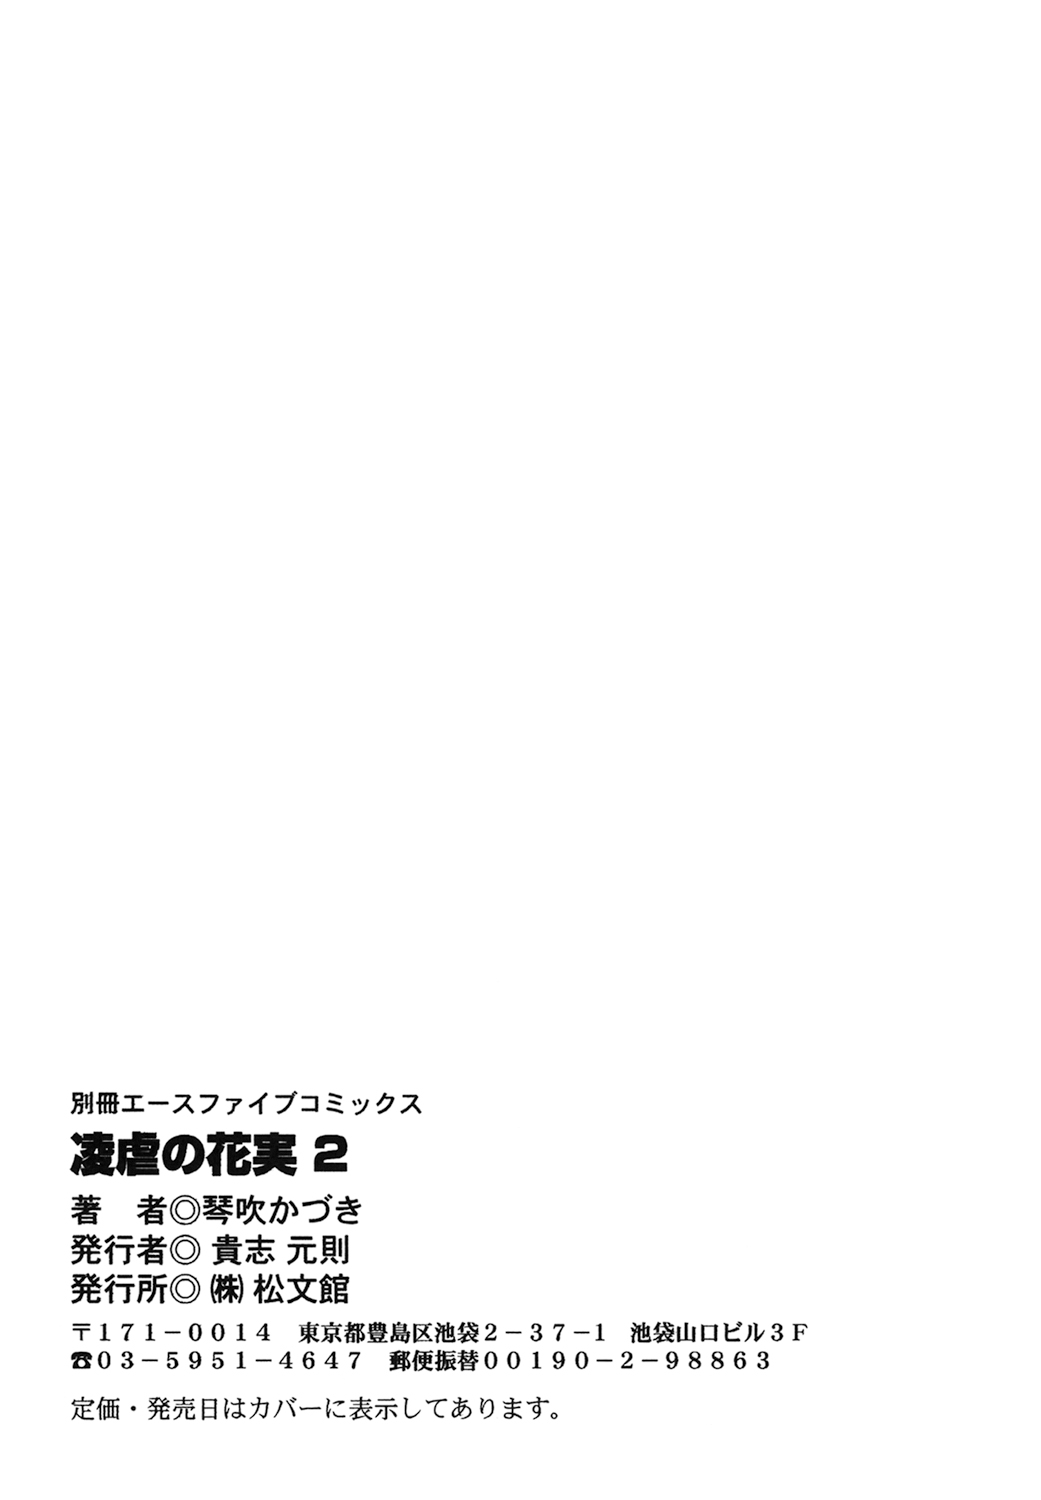 [Kazuki Kotobuki] Ryogyaku no Kajitsu Episode 2 [琴吹かづき] 凌虐の花実 Episode2